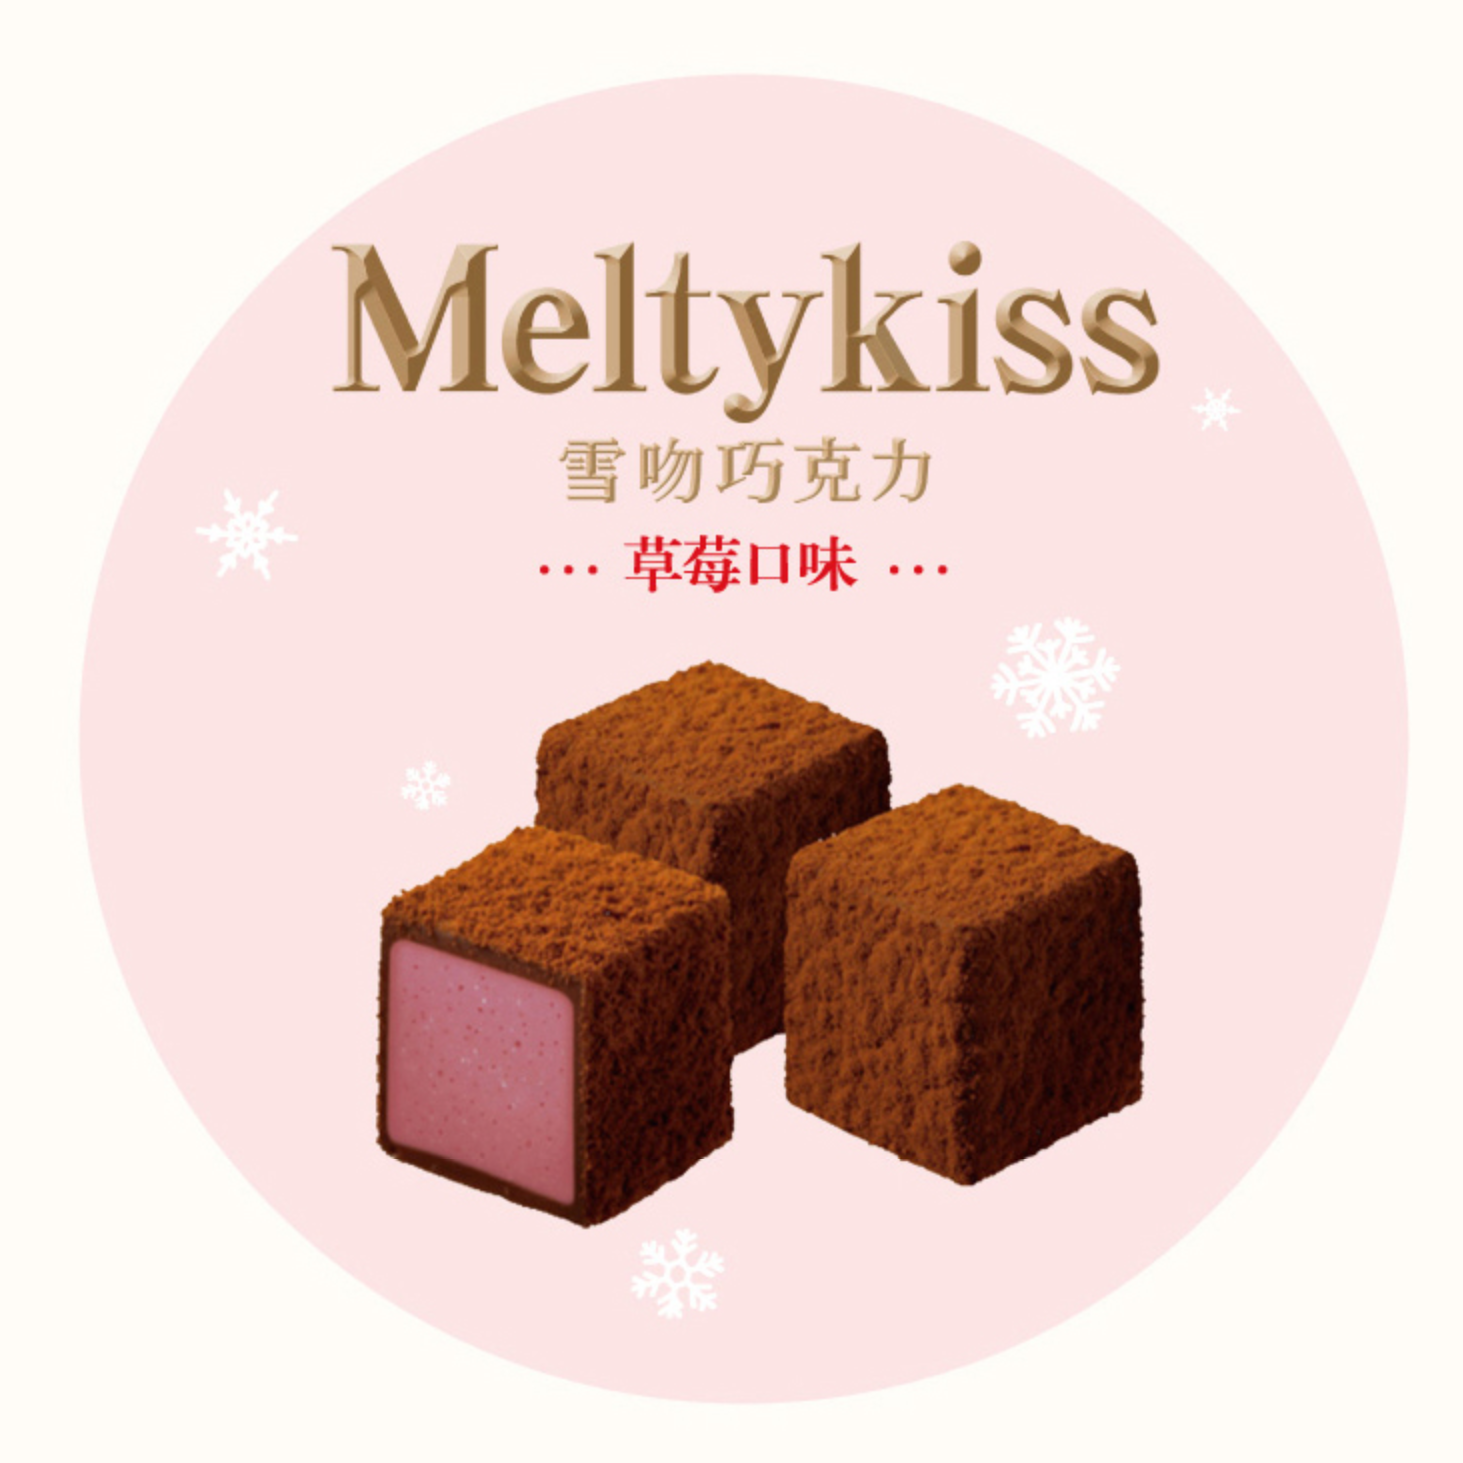 明治雪吻巧克力-草莓味 (60g）/ Meiji Melty Kiss strawberry